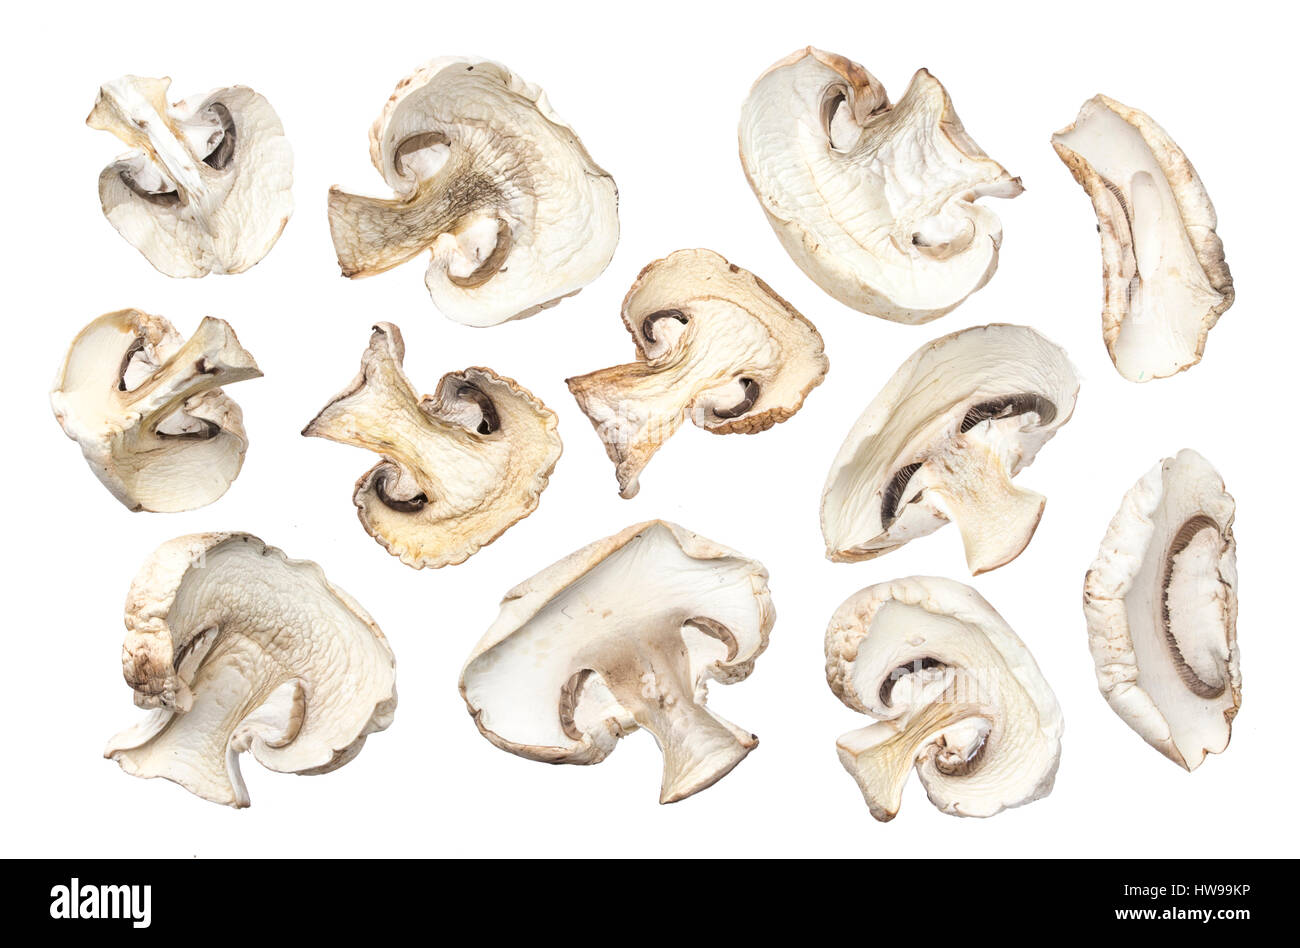 Funghi secchi isolati su sfondo bianco Foto Stock